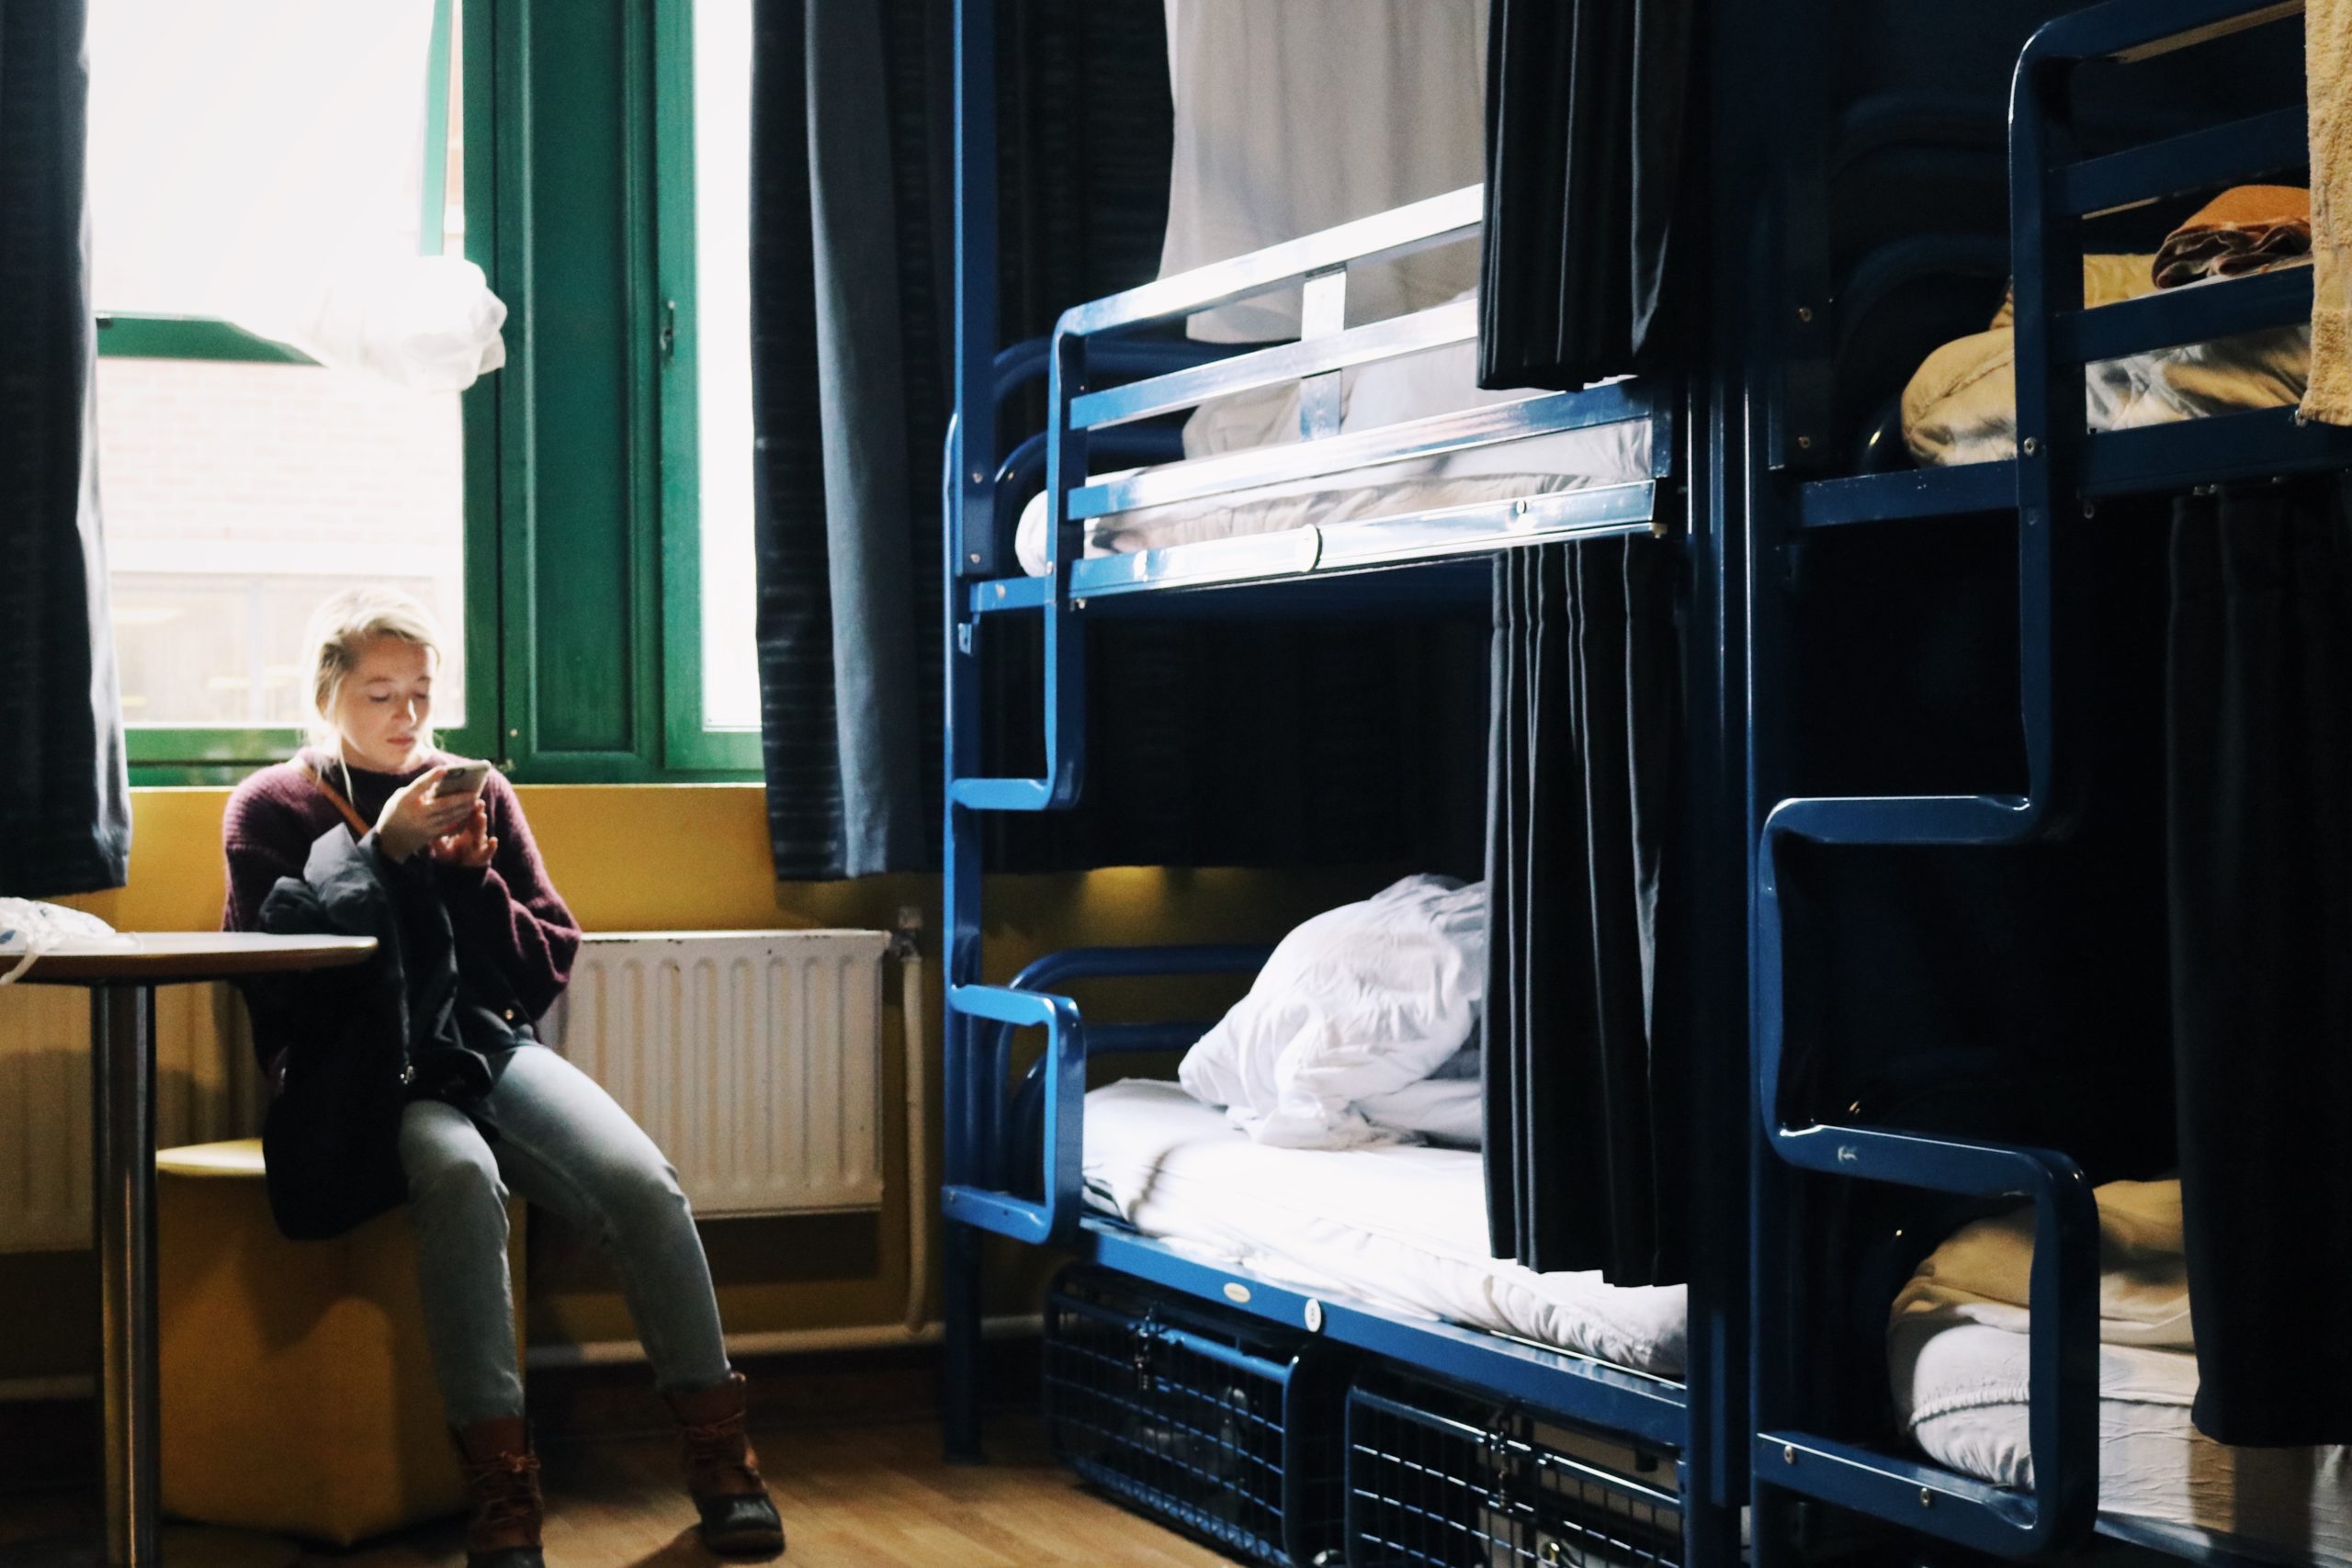 Hostel vs Airbnb: The Great Debate